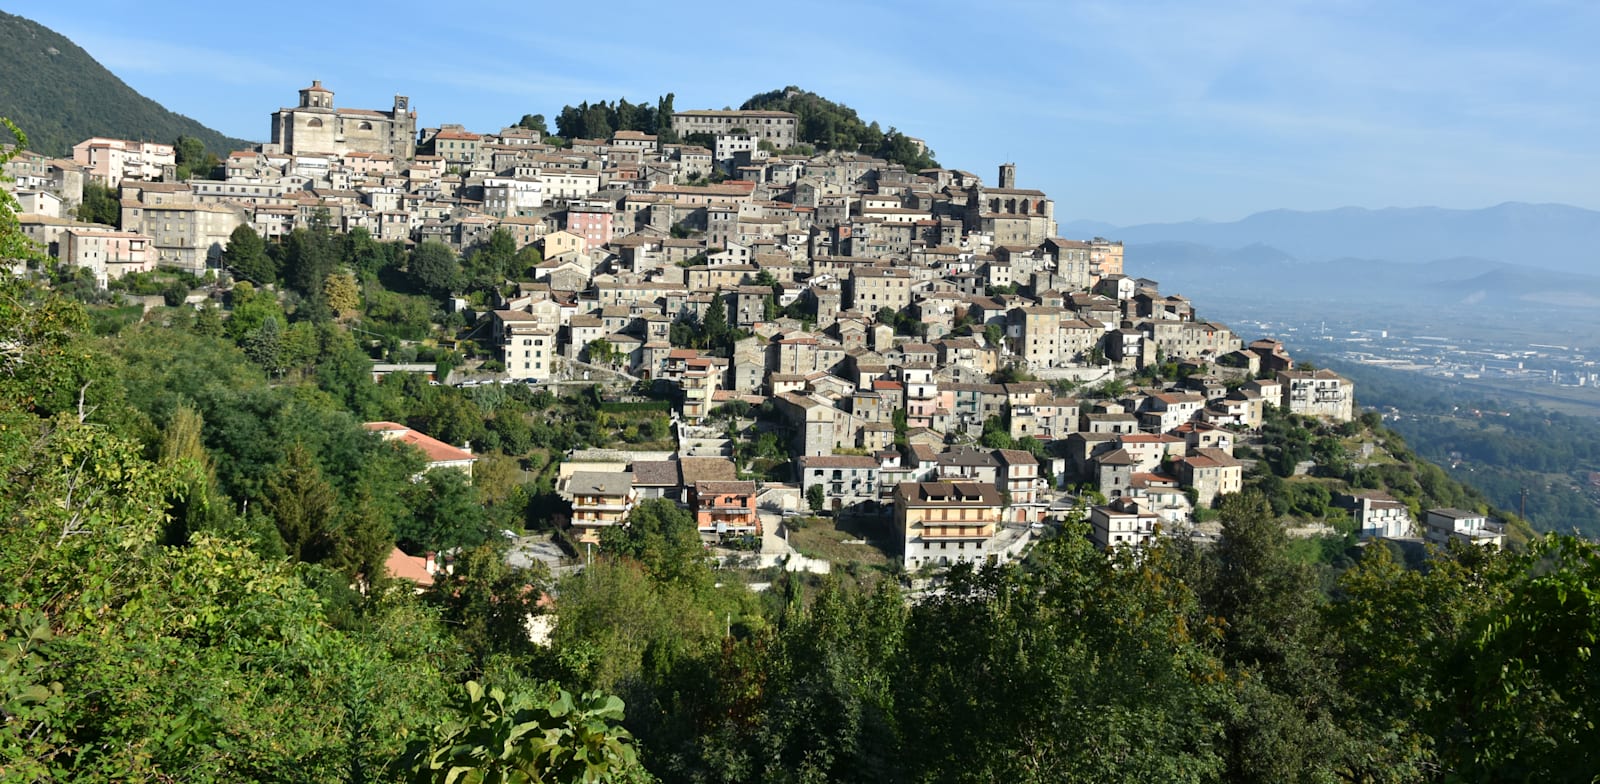 הכפר פטריצ'ה באיטליה. ראש העיר מנסה למכור בתים באירו / צילום: Shutterstock